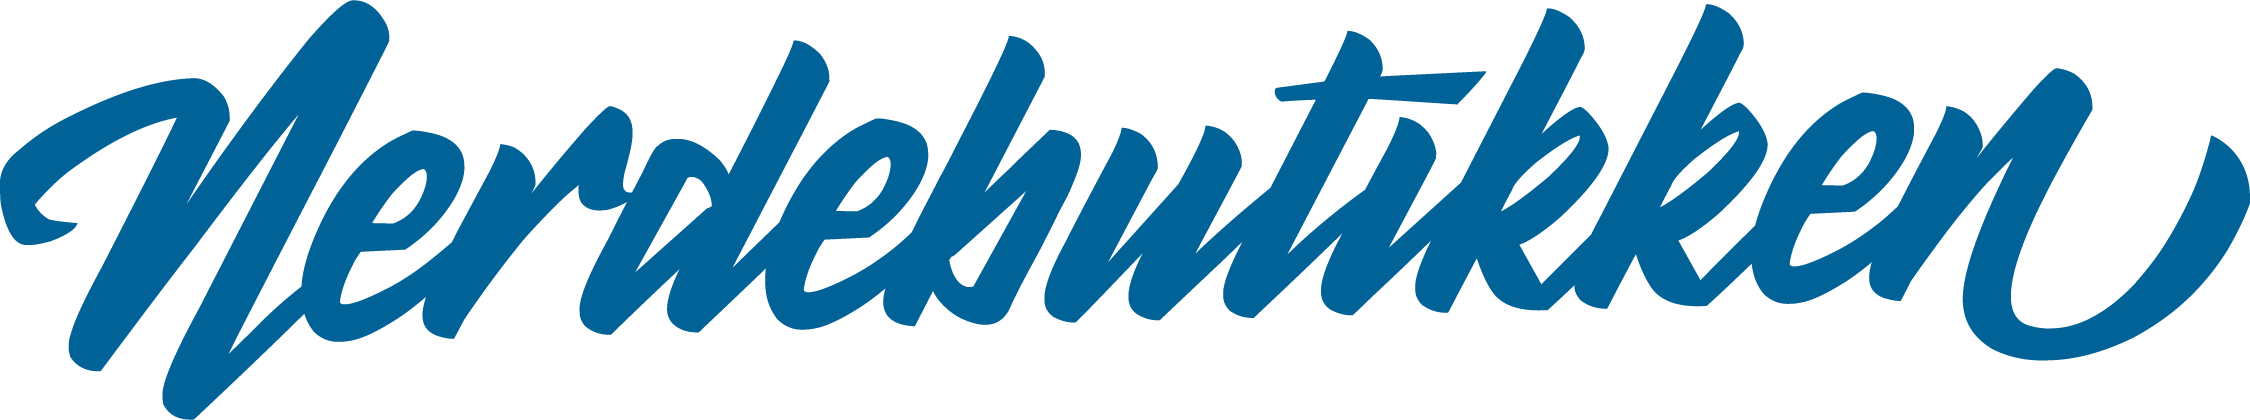 Nerdebutikken logo